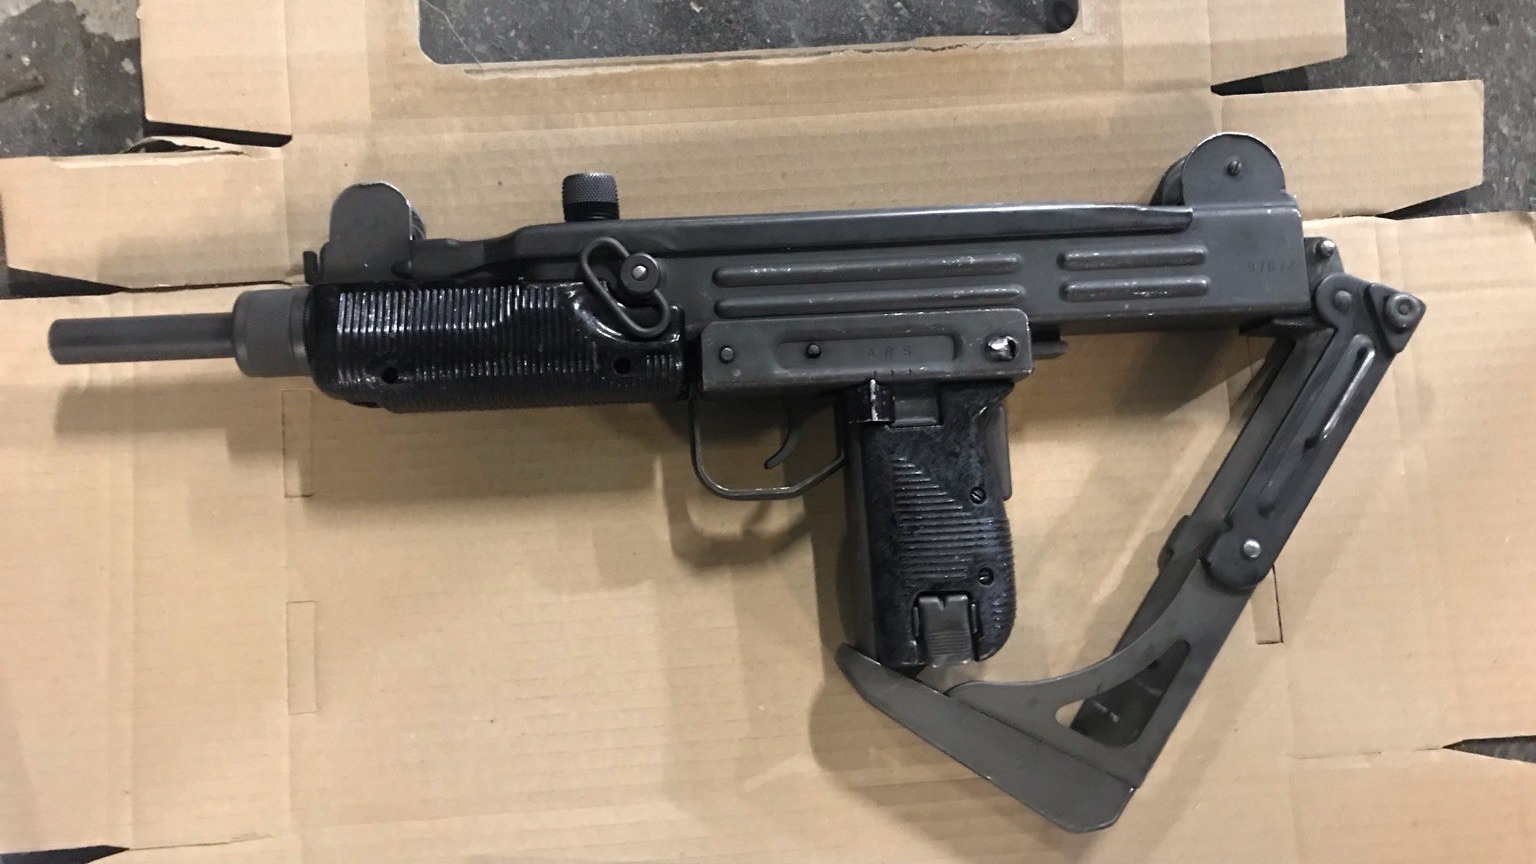 Loaded Uzi submachine gun found in stolen car in Brixton | ITV News London